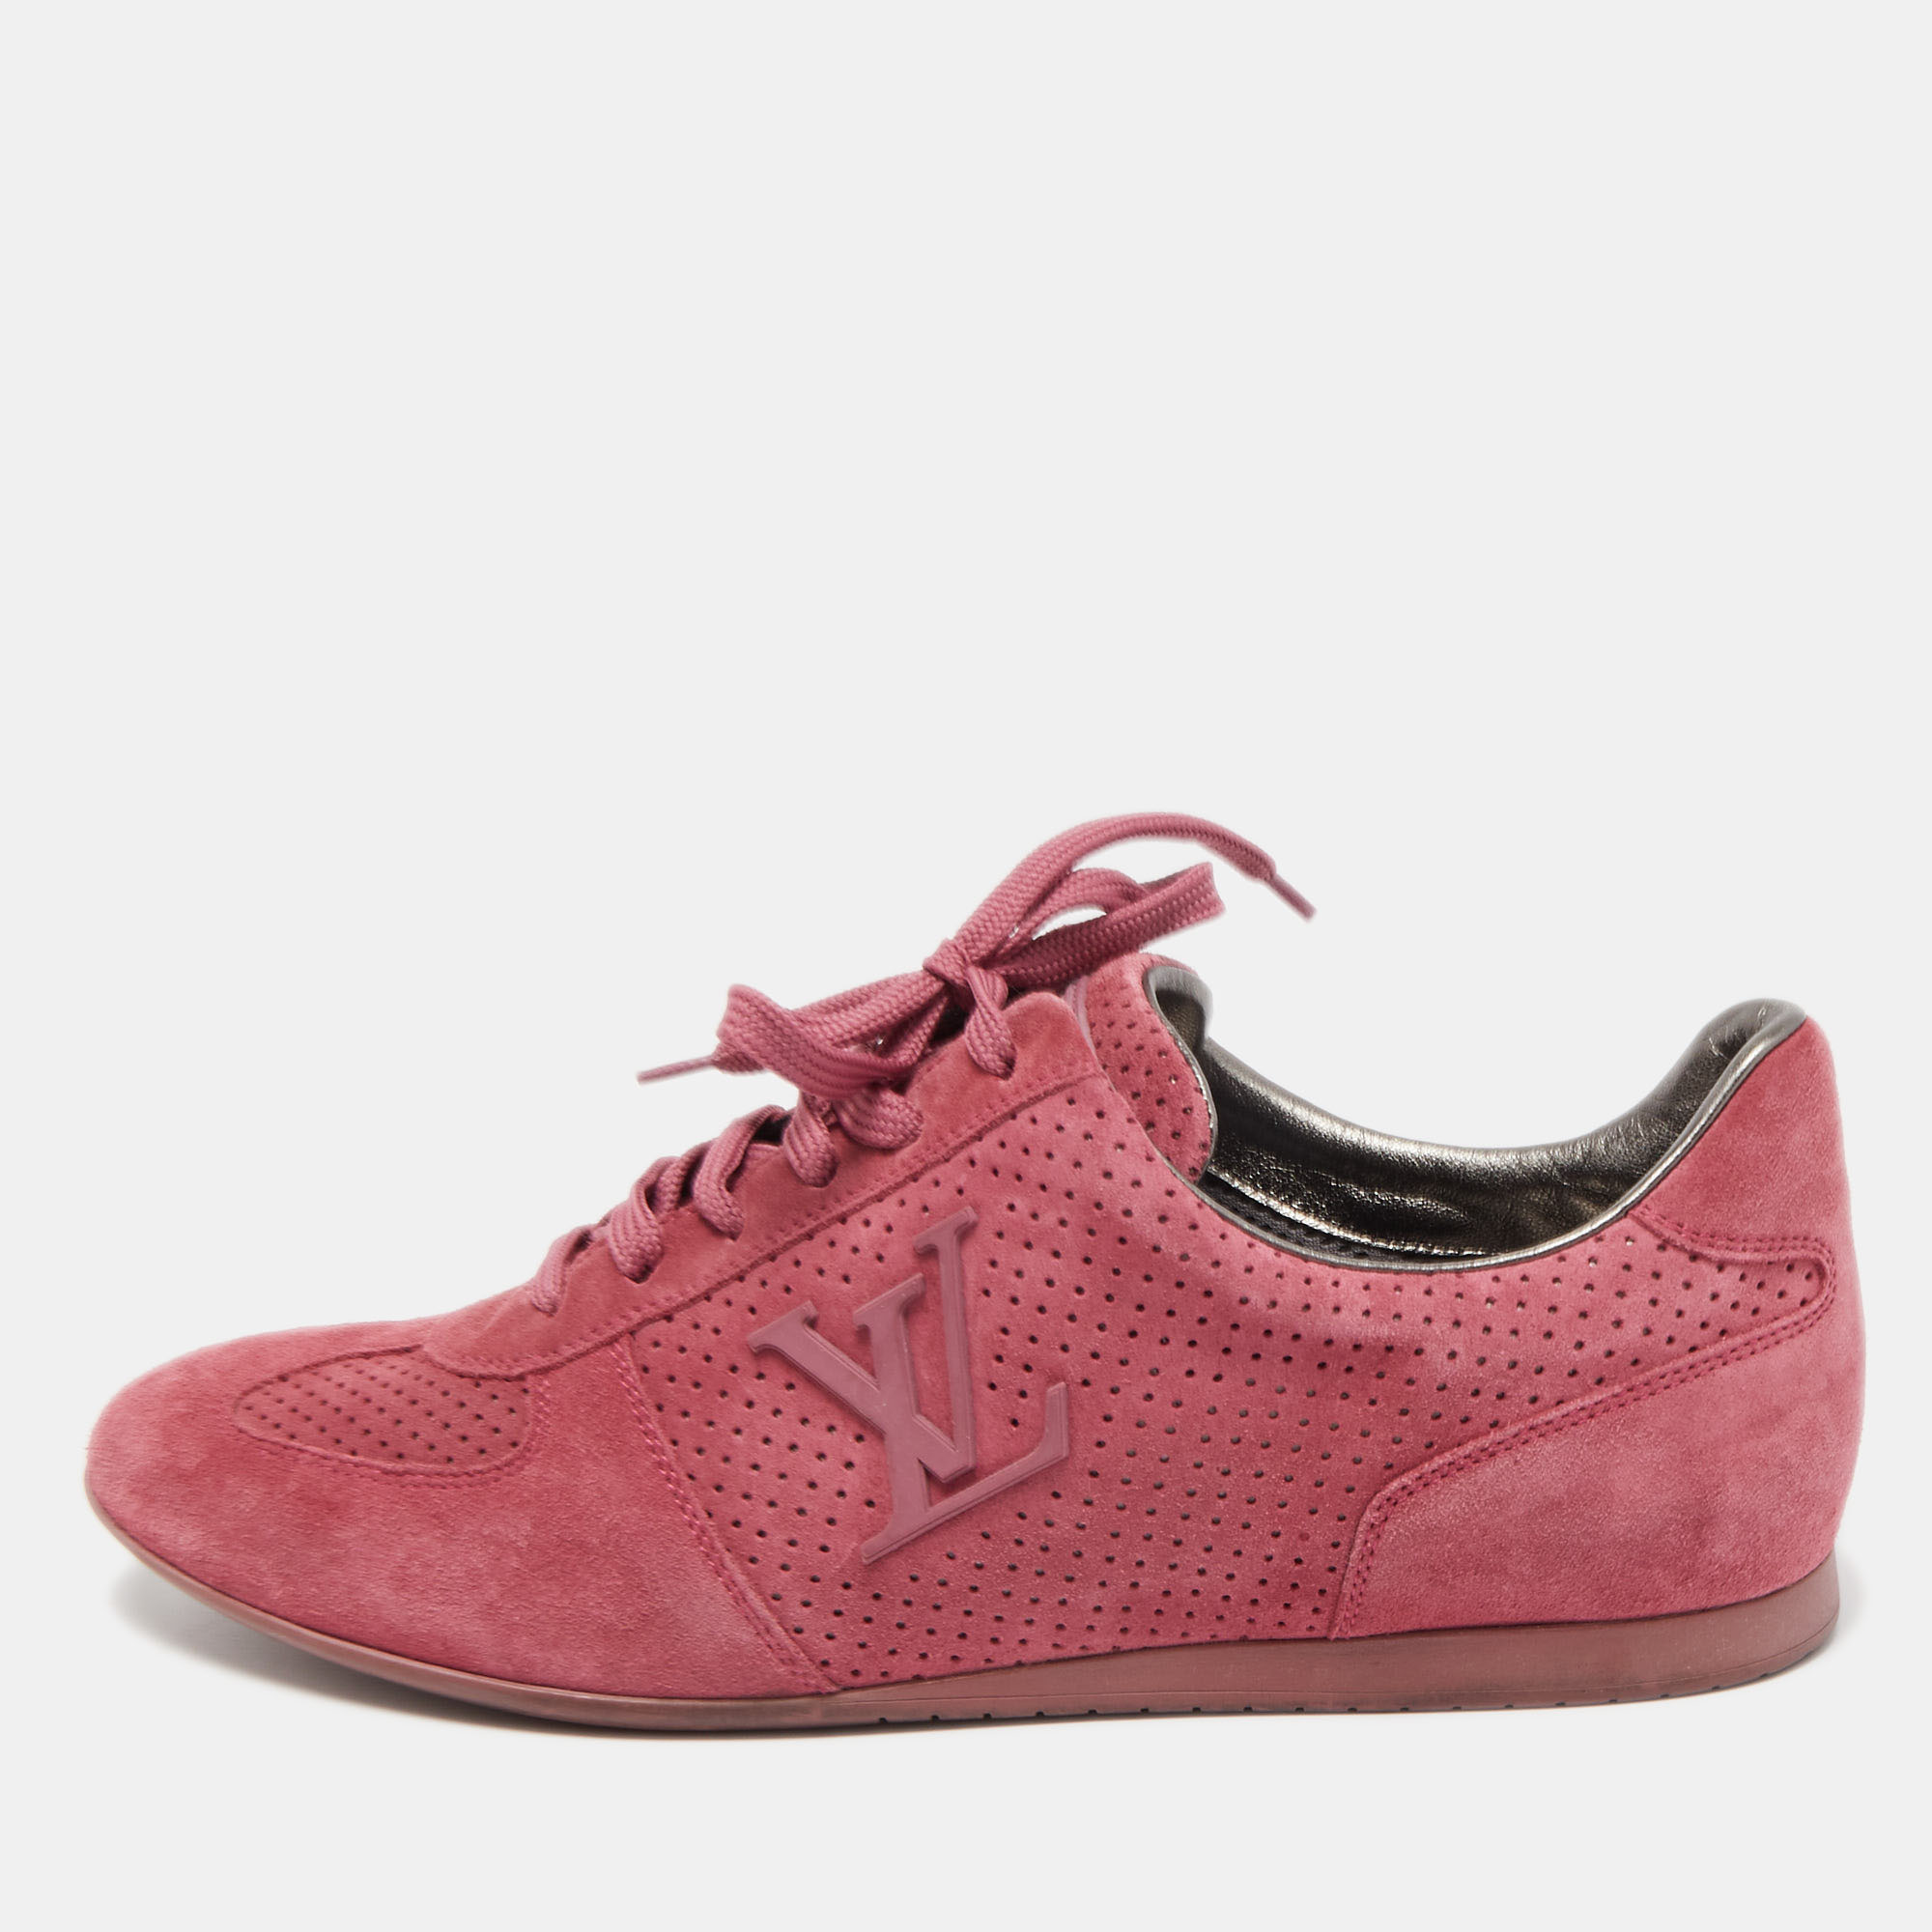 Louis Vuitton Run Away Sneaker Powdery Pink. Size 37.5